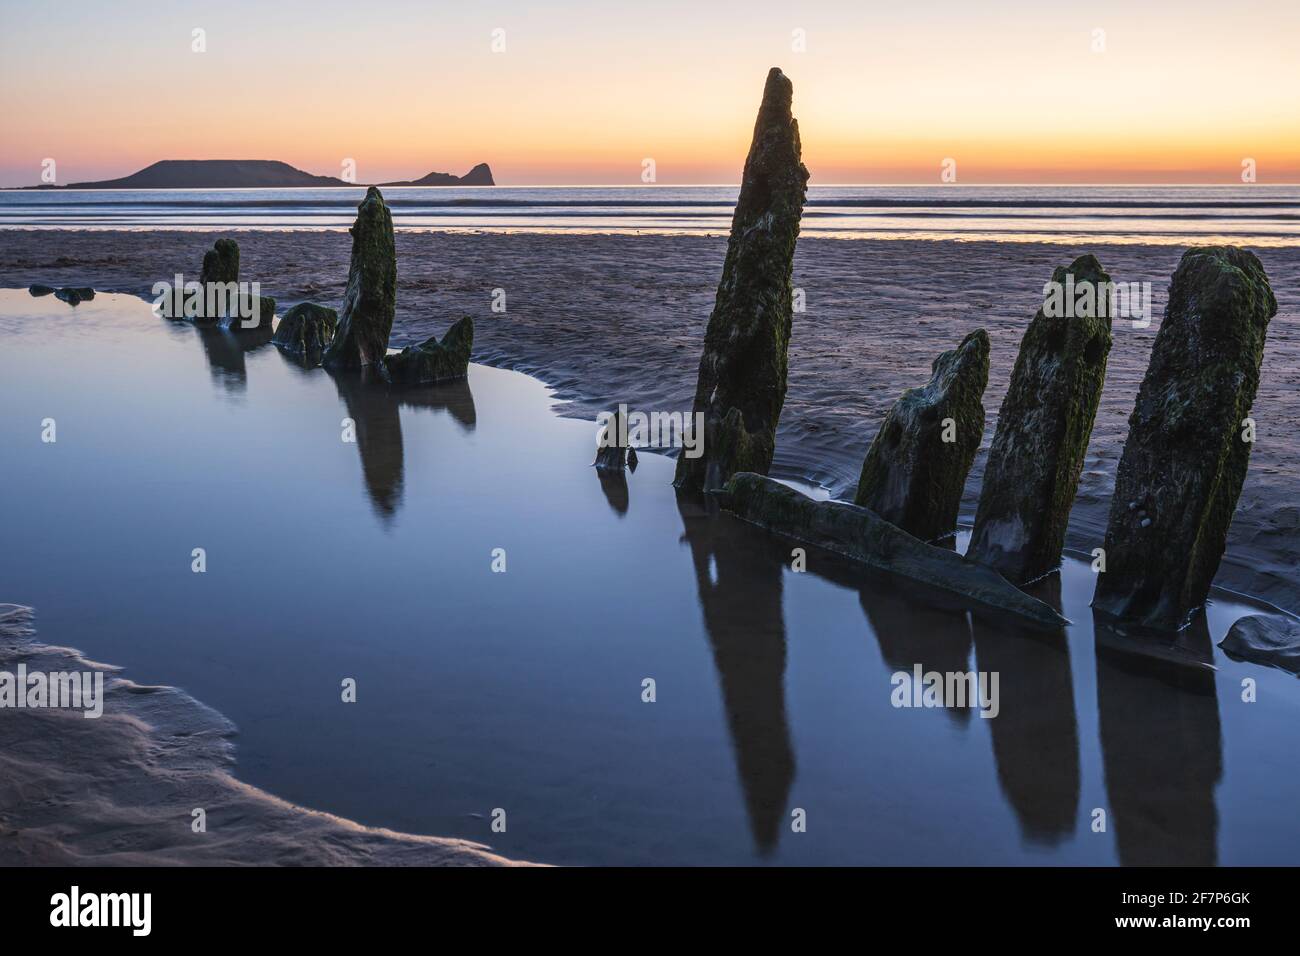 Épave de Helvetia au coucher du soleil sur la baie de Rhossili, pas de gens. Gower Peninsula, pays de Galles du Sud, Royaume-Uni Banque D'Images